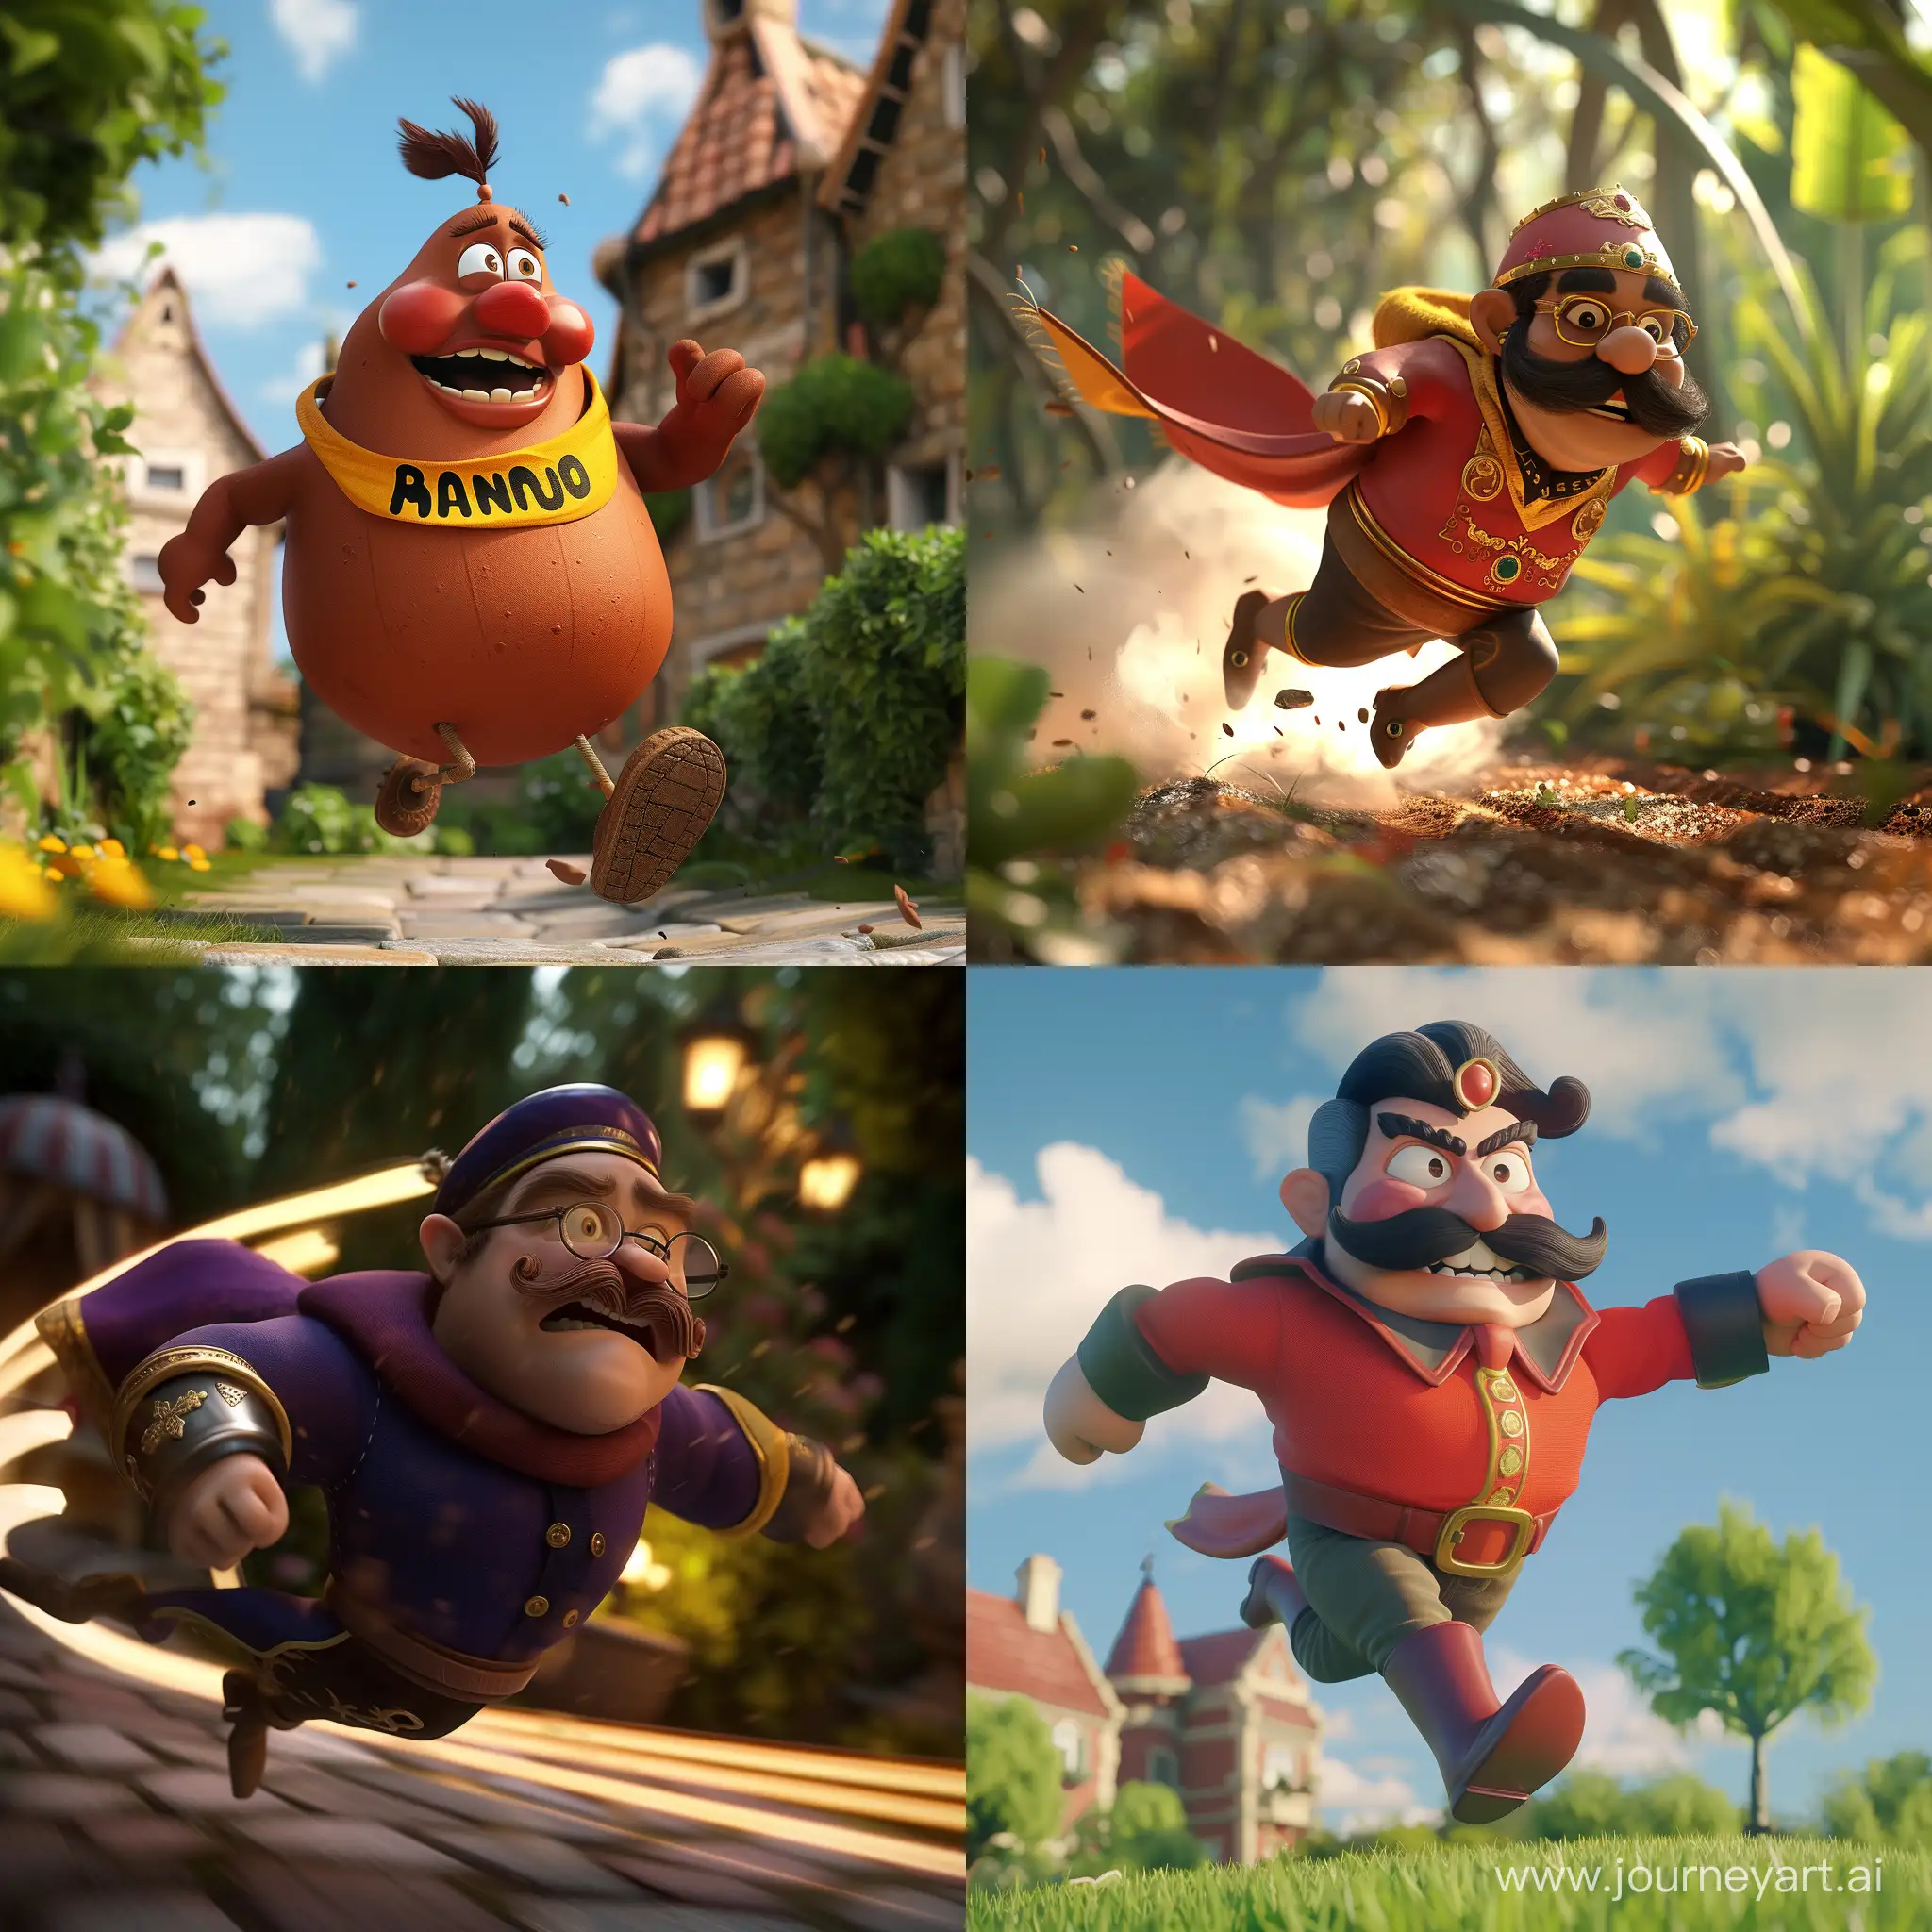 Sir-Dadadoo-de-Garten-Speedy-Knight-in-3D-Pixar-Style